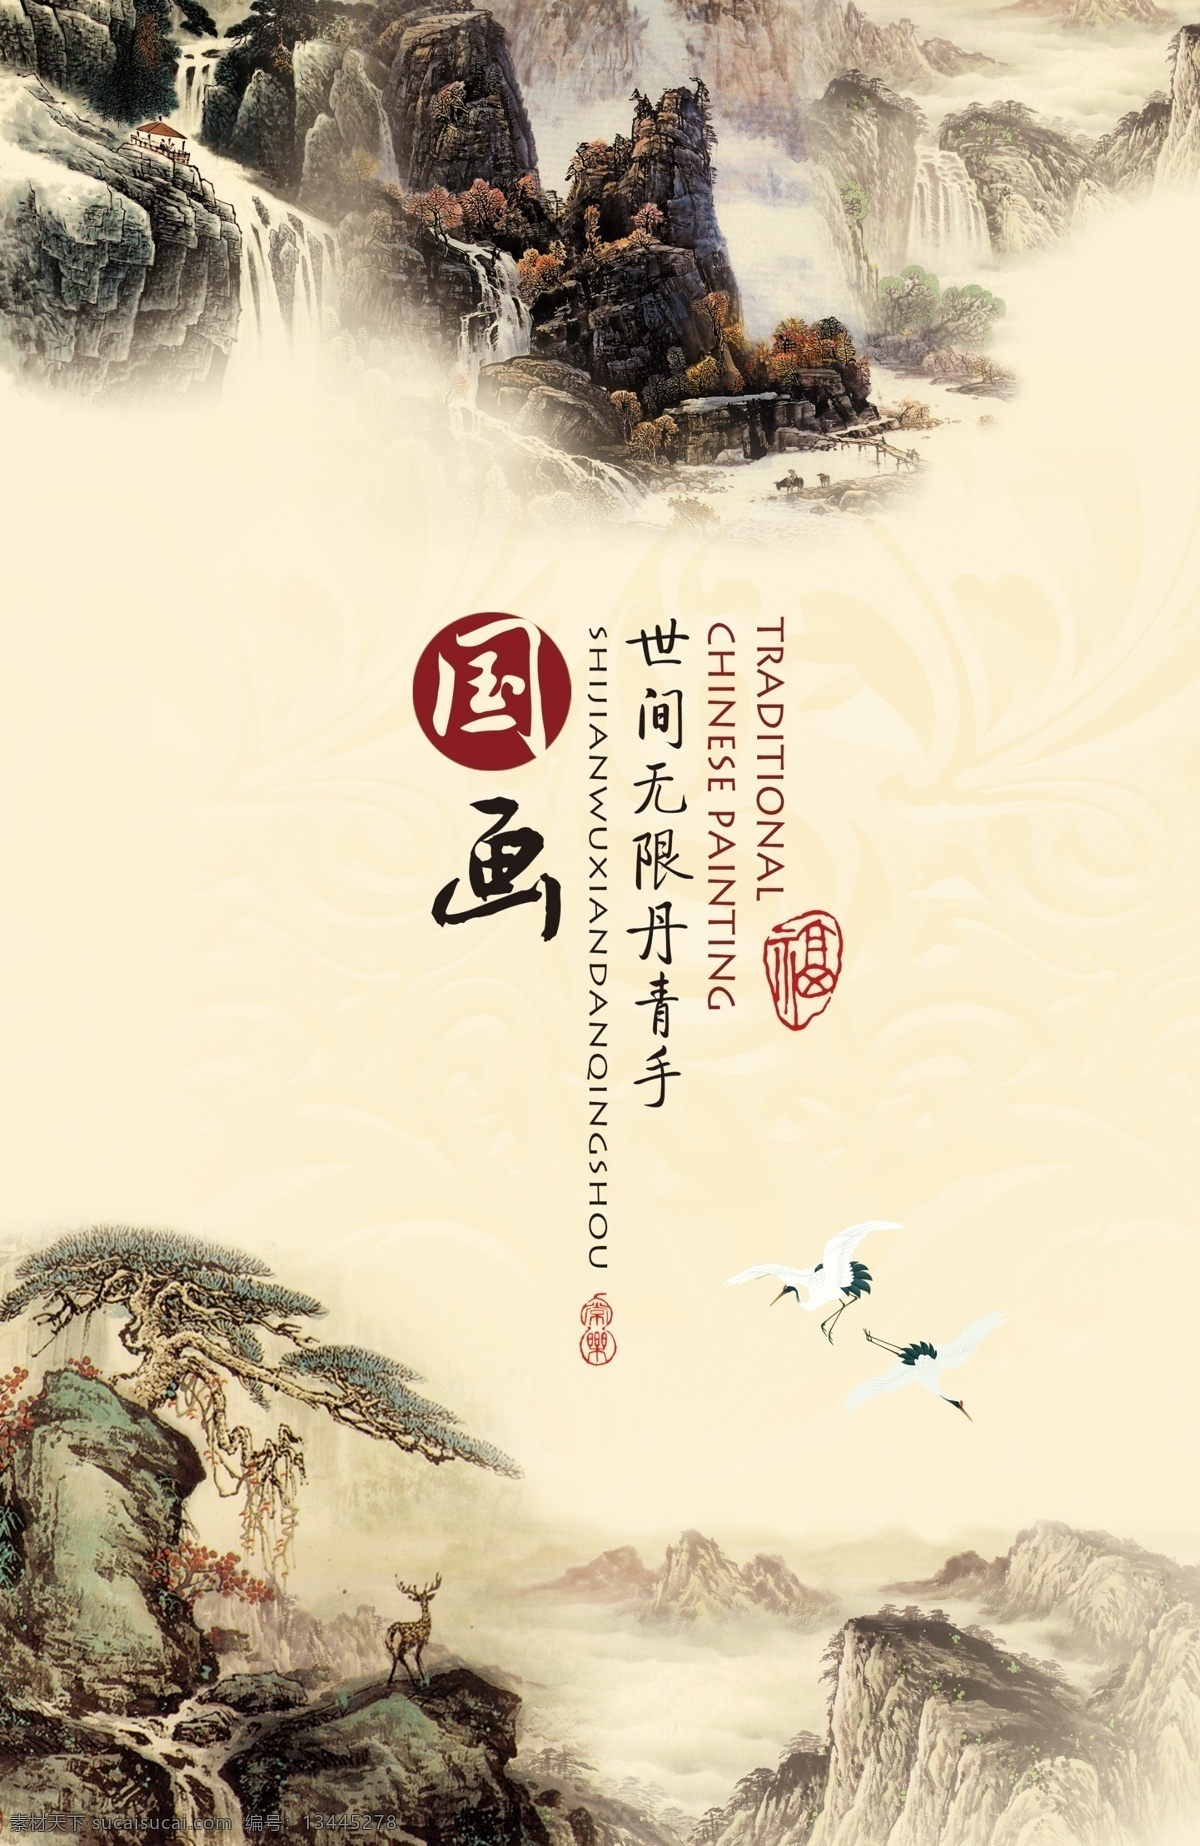 中国 风 国画 海报 中国风国画 美术素材 艺术素材 国画宣传 国画海报 风景图片